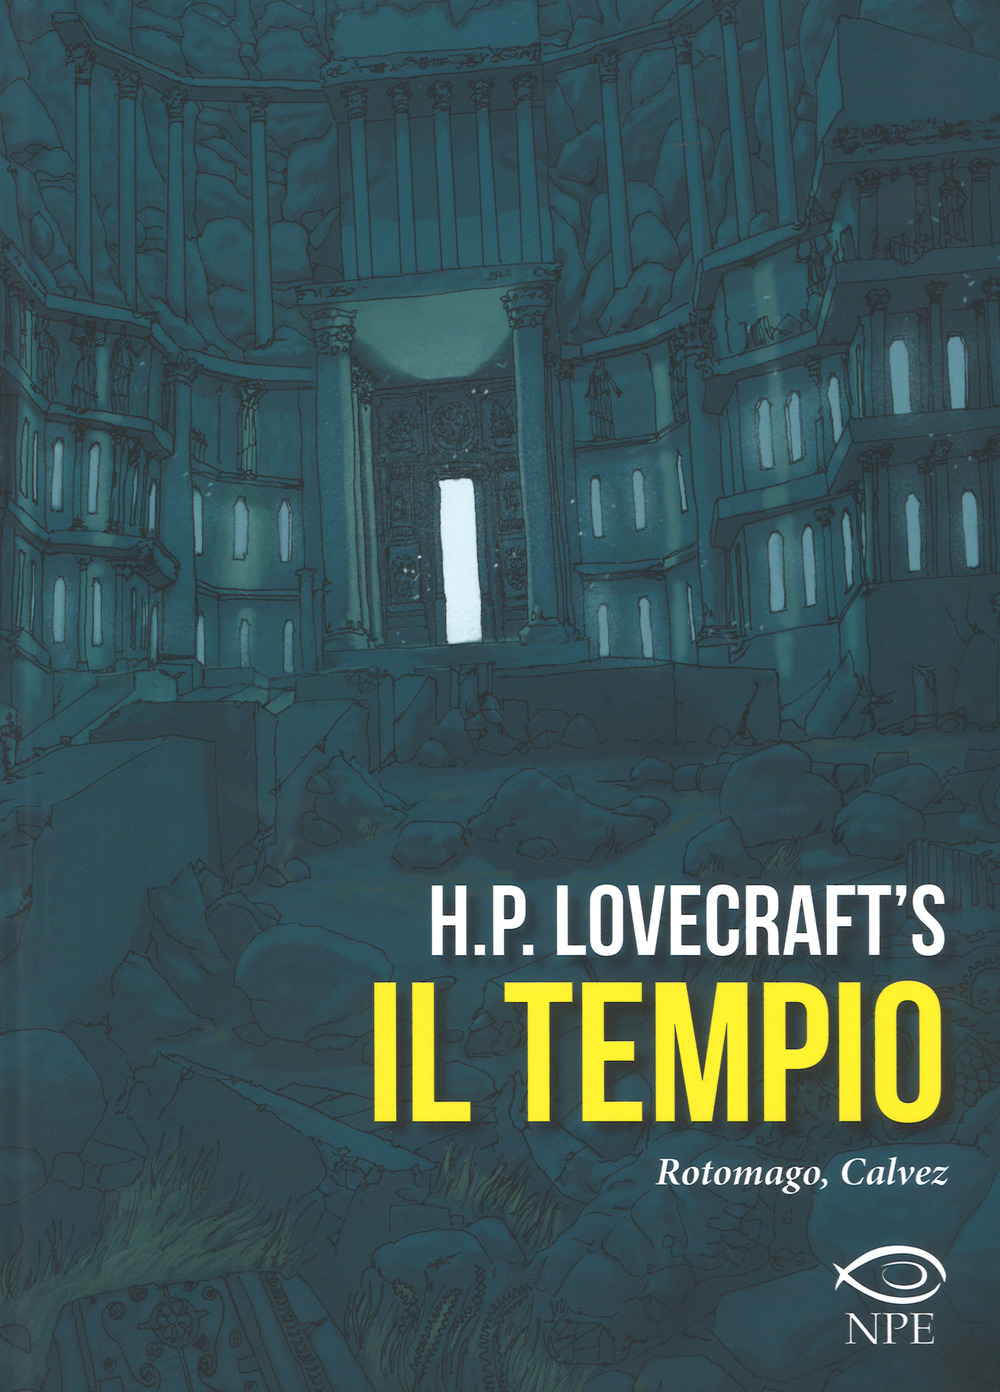 H.P. Lovecraft's Il Tempio (Italiano language)